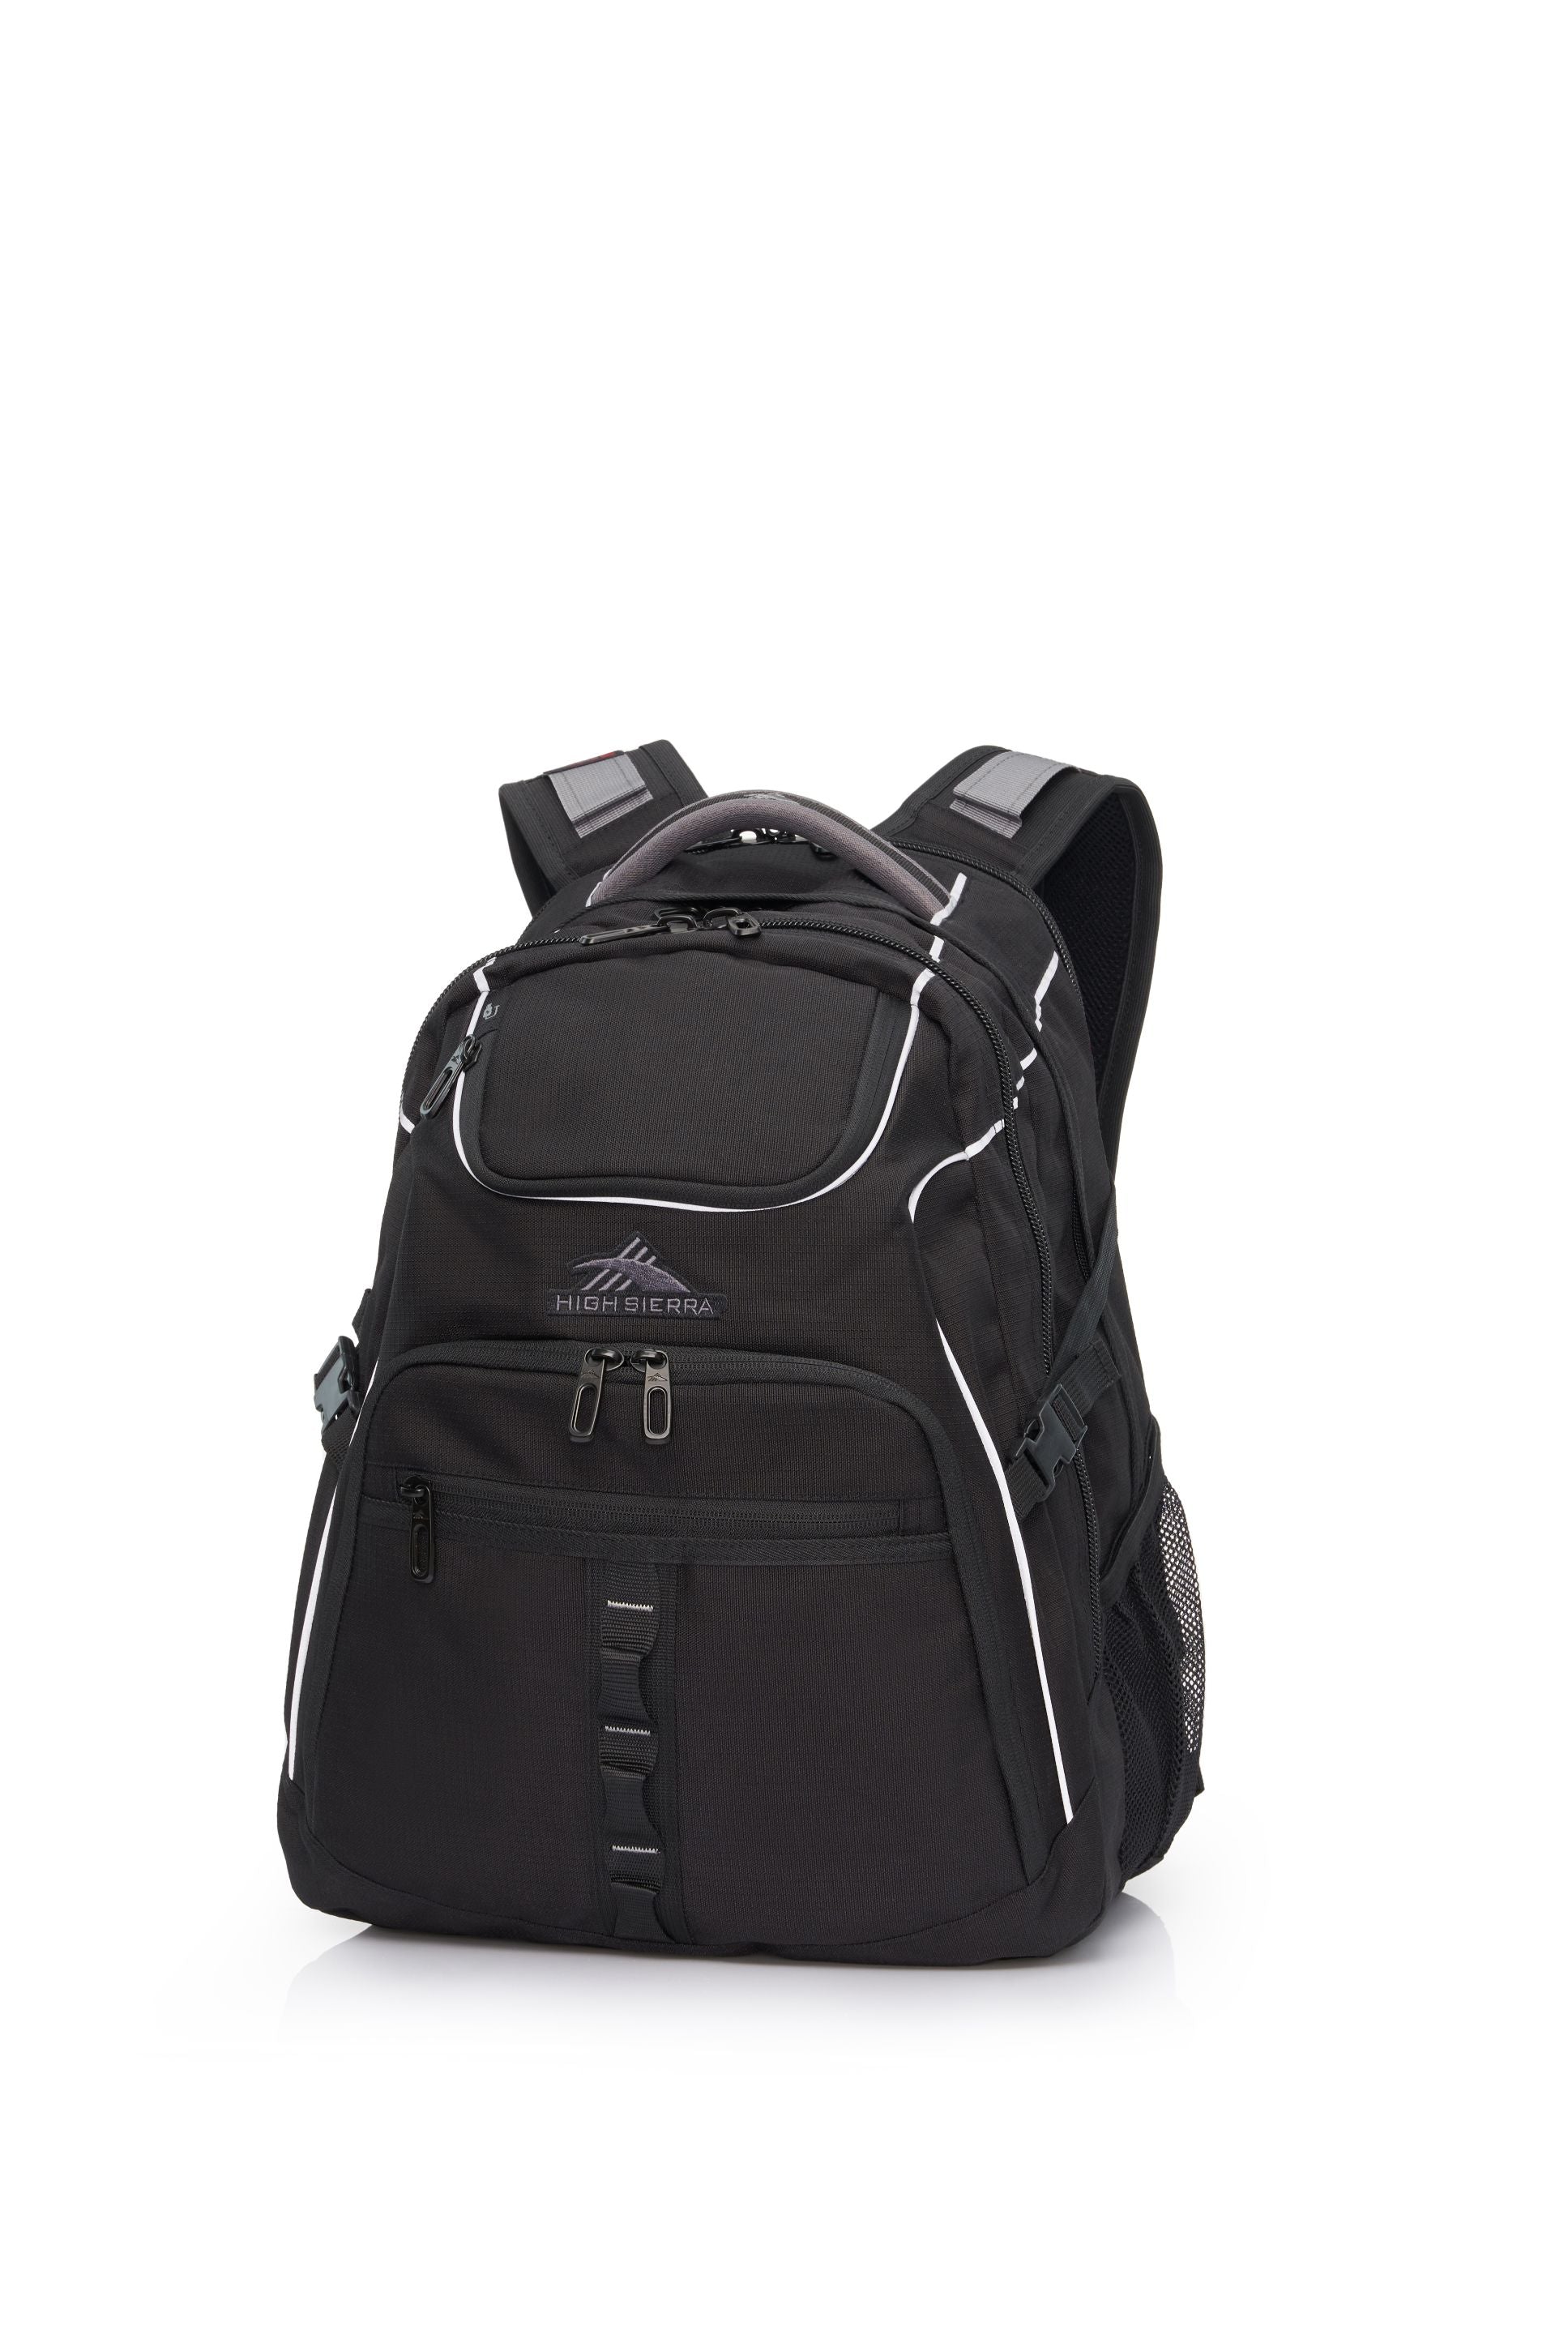 High Sierra - Access 3.0 Eco Backpack - Black-1